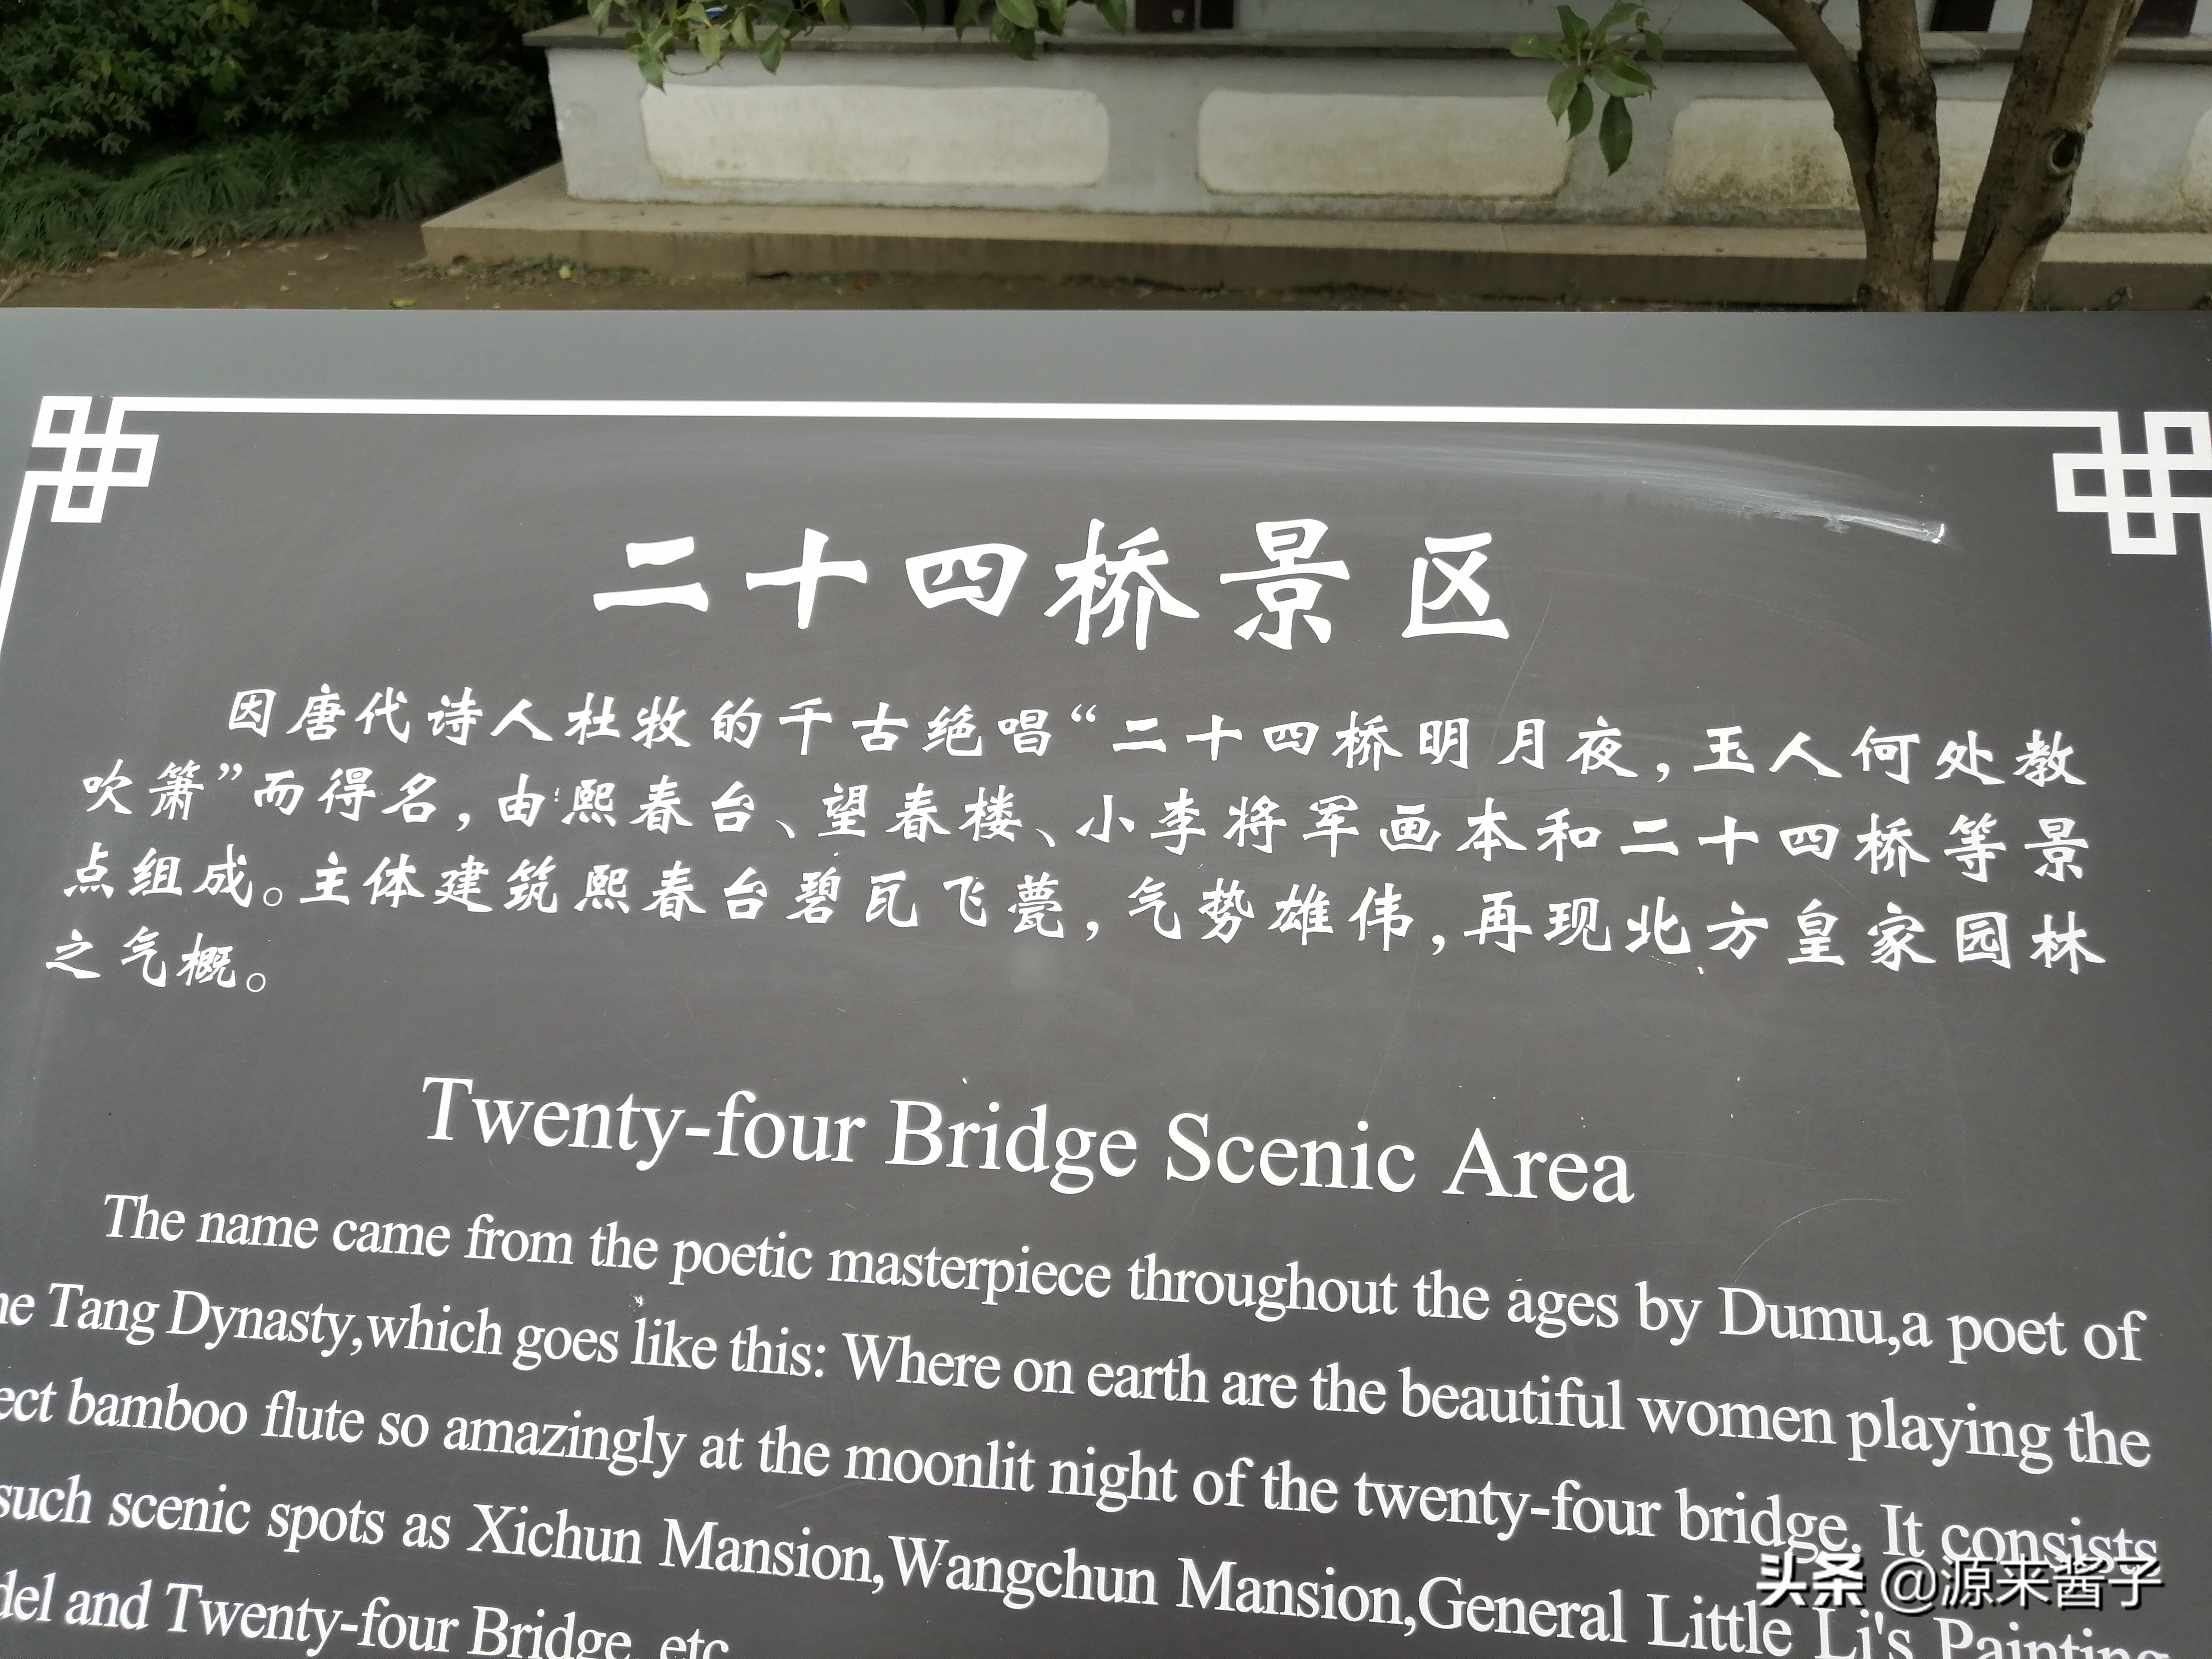 中国最秀美的五亭桥！还有二十四桥明月夜！扬州瘦西湖人间大美！